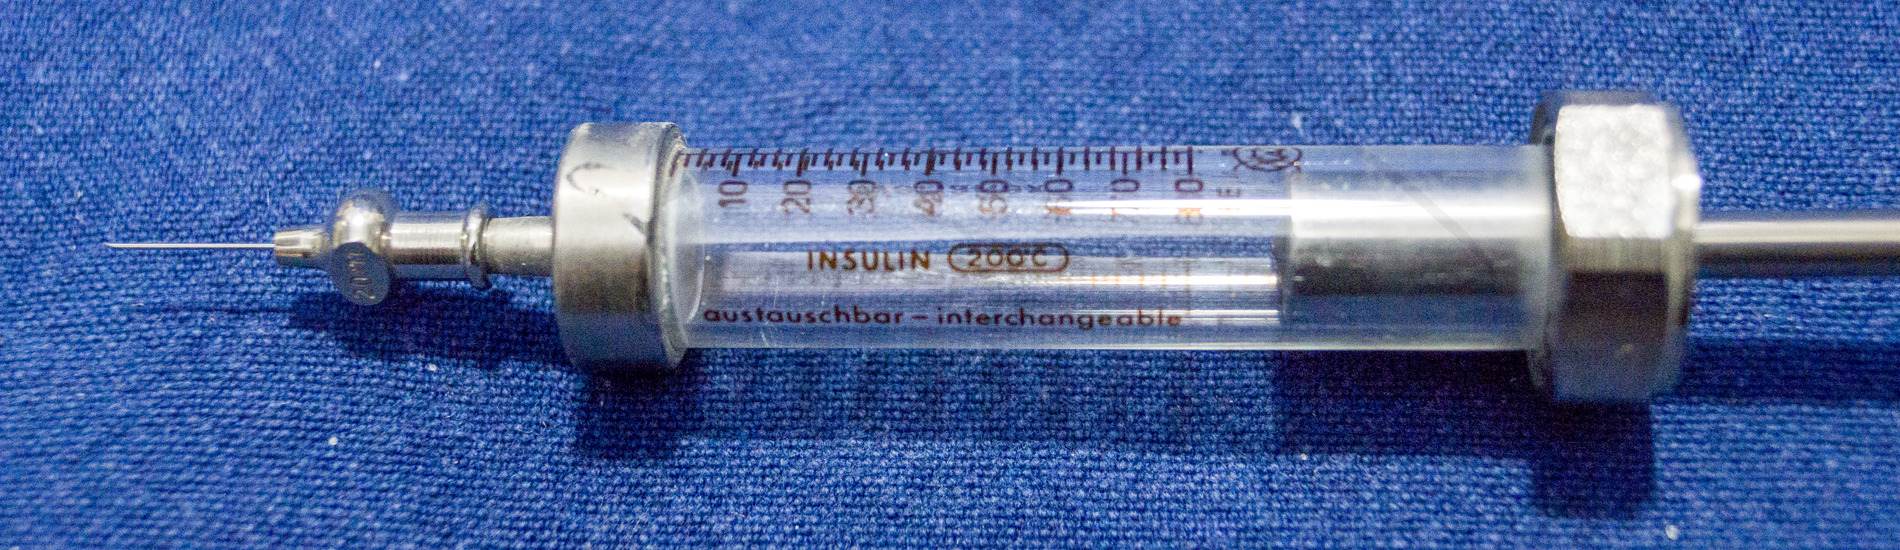 Insulininjektor "Diarapid", 1963'er Jahre, Insulinspritze ohne Injektor